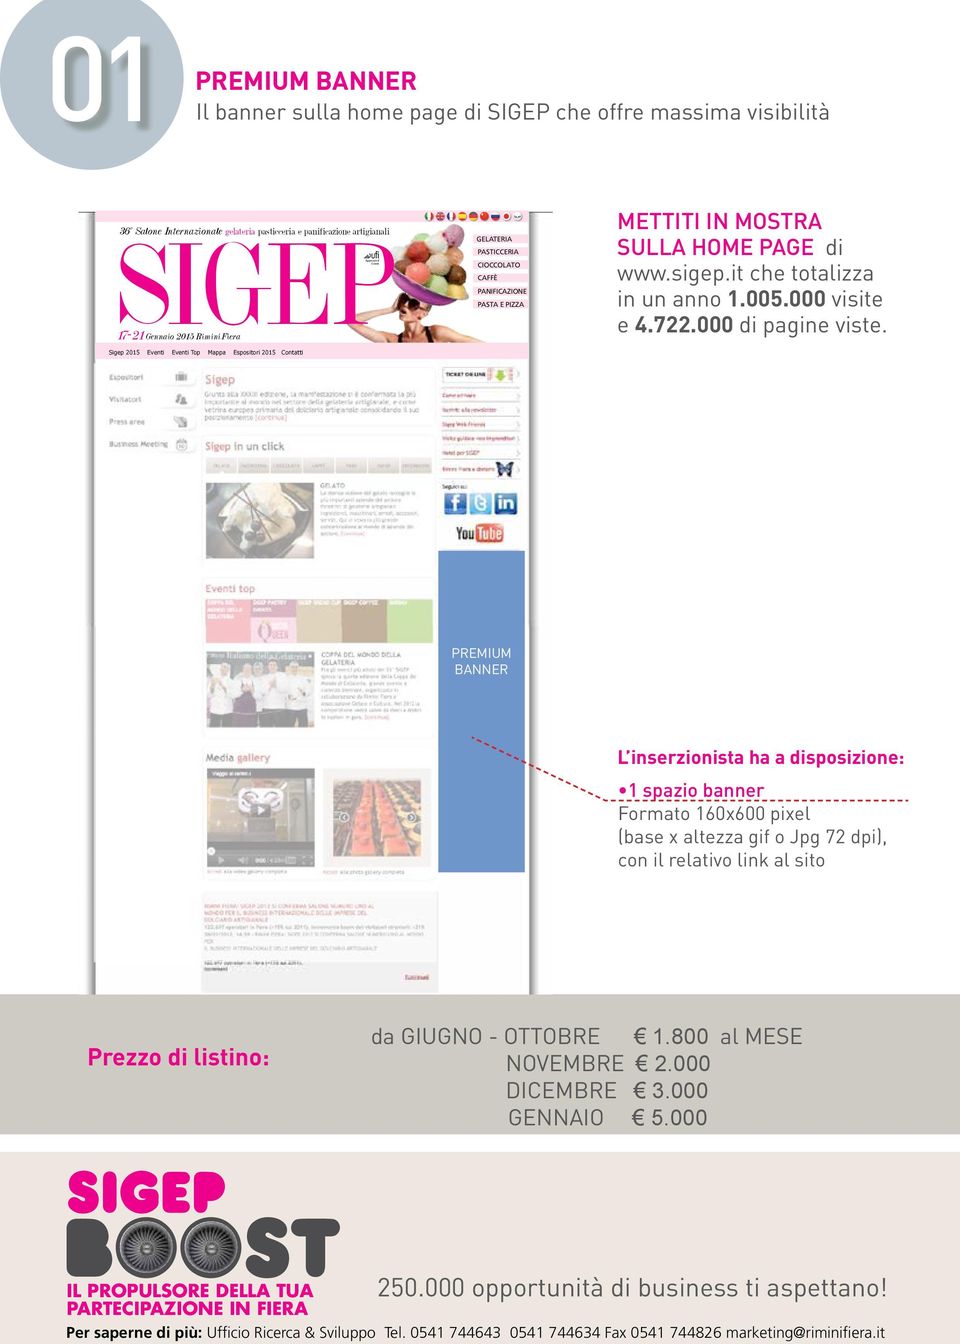 SULLA HOME PAGE di www.sigep.it che totalizza in un anno 1.005.000 visite e 4.722.000 di pagine viste.